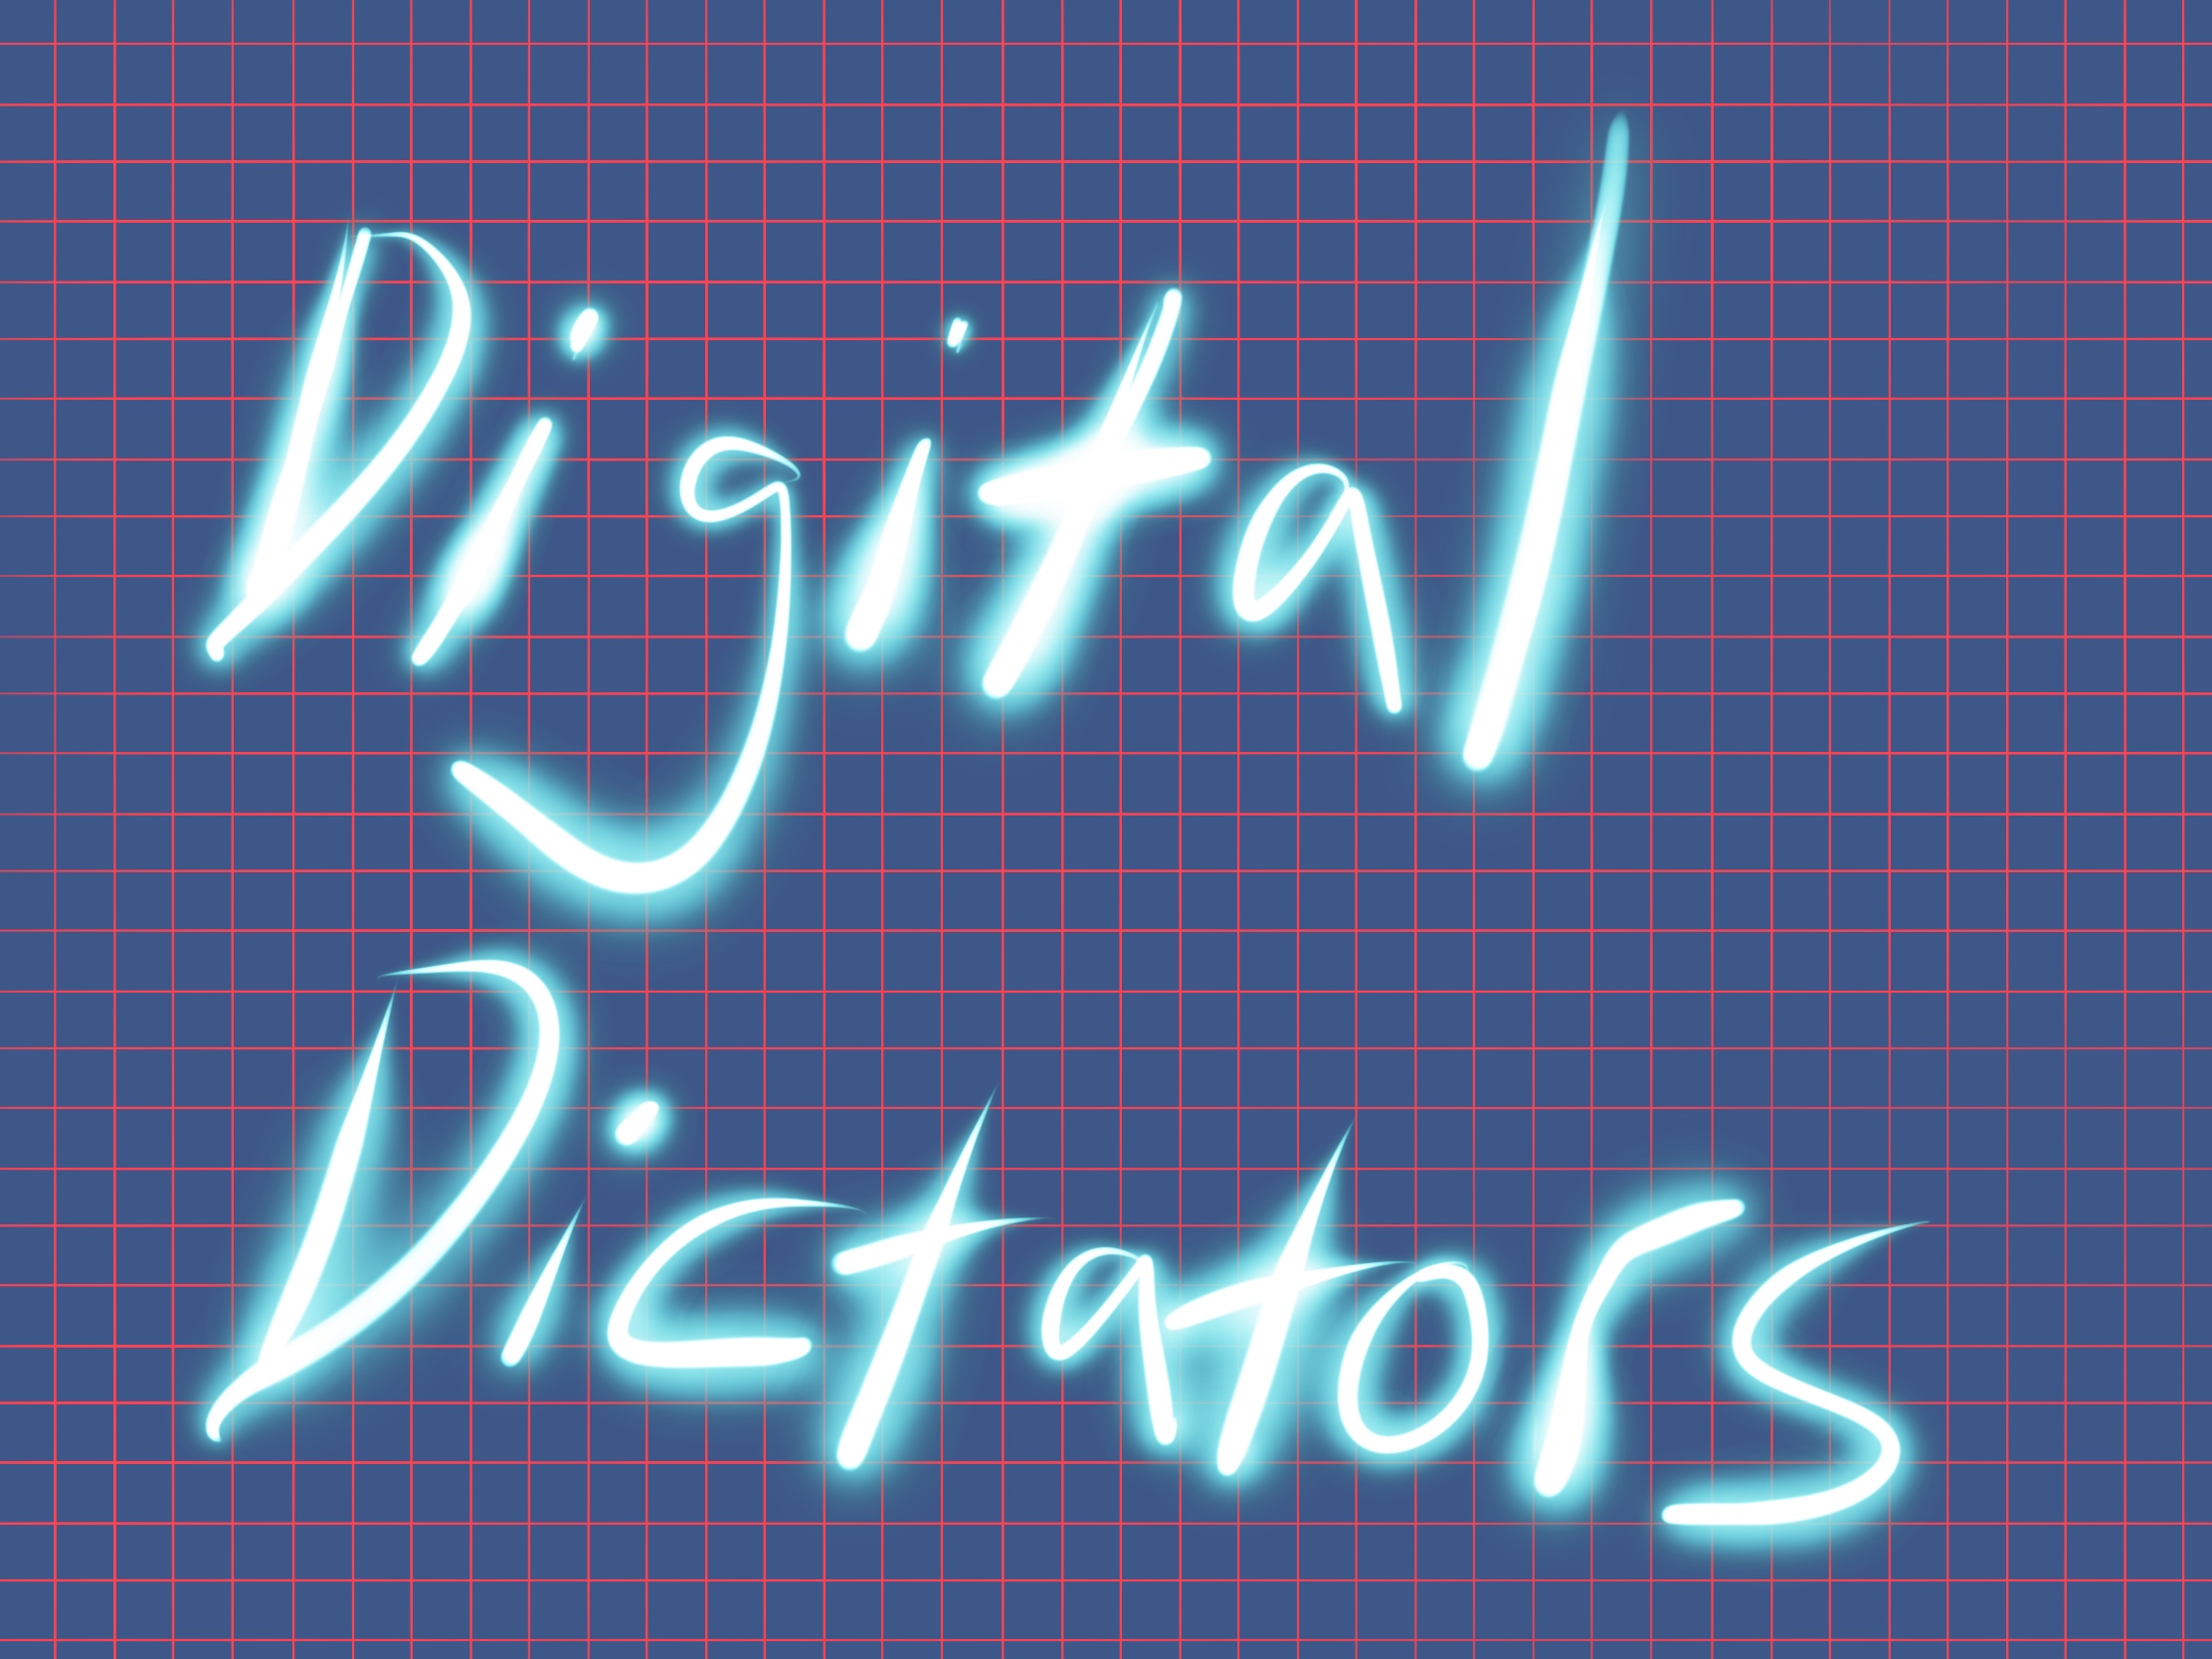 Digital-Dictators.jpg